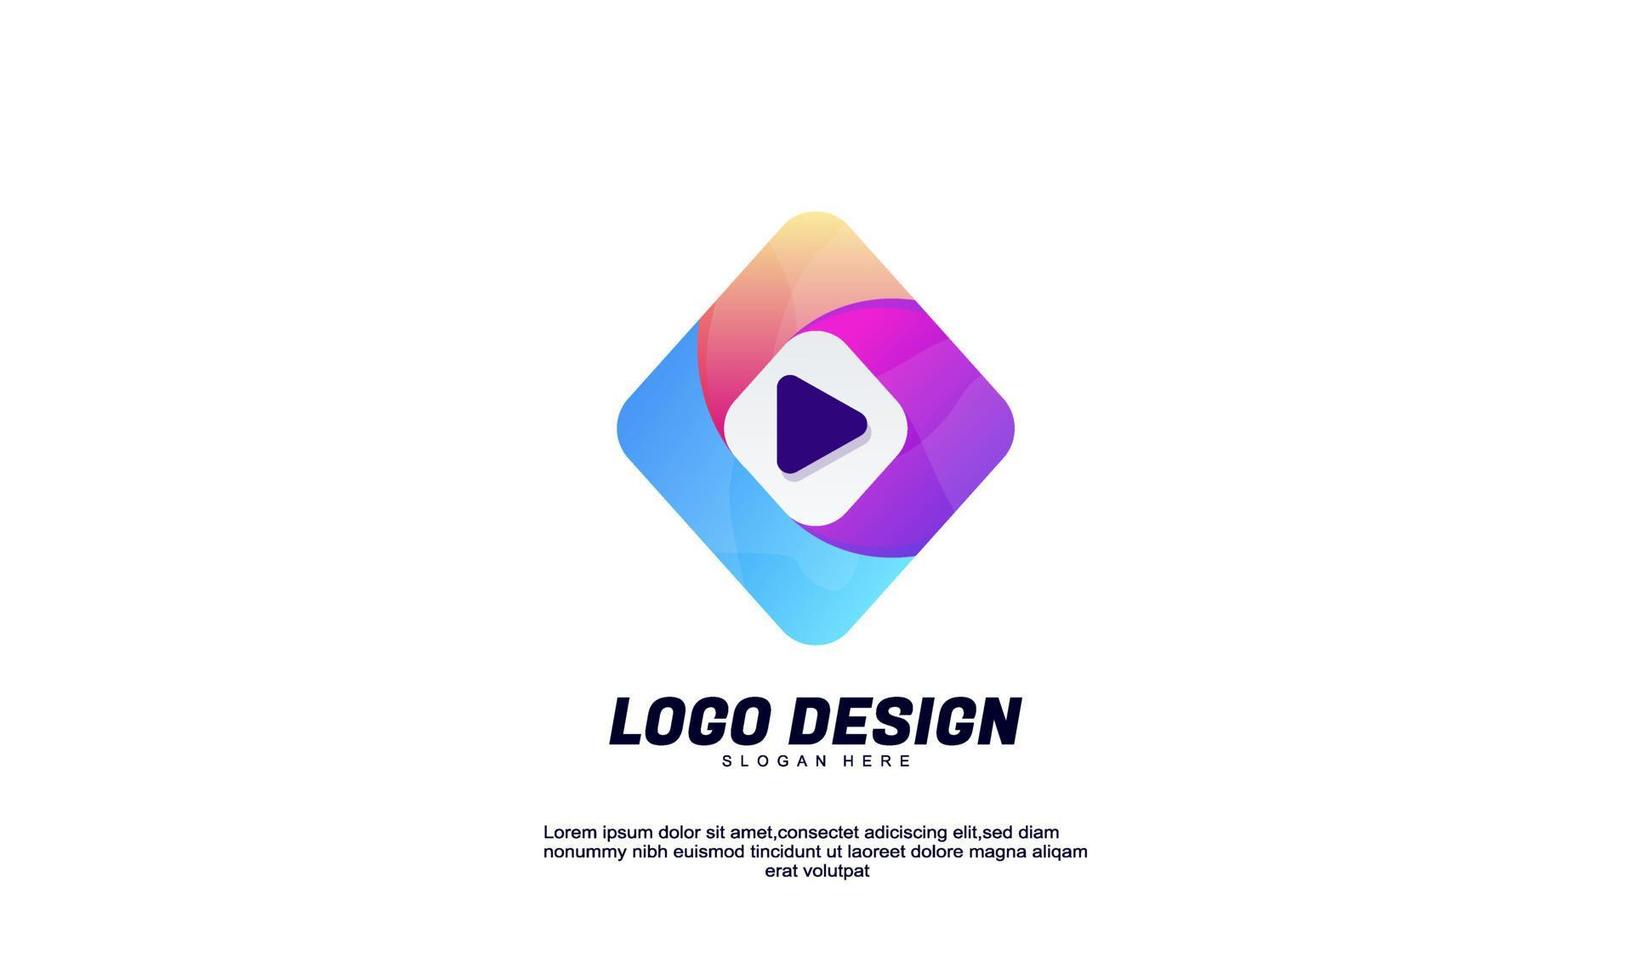 rectángulo de idea de logotipo creativo abstracto de vector de stock y medios de reproducción para empresa de identidad de marca o plantilla de diseño de color degradado de negocio